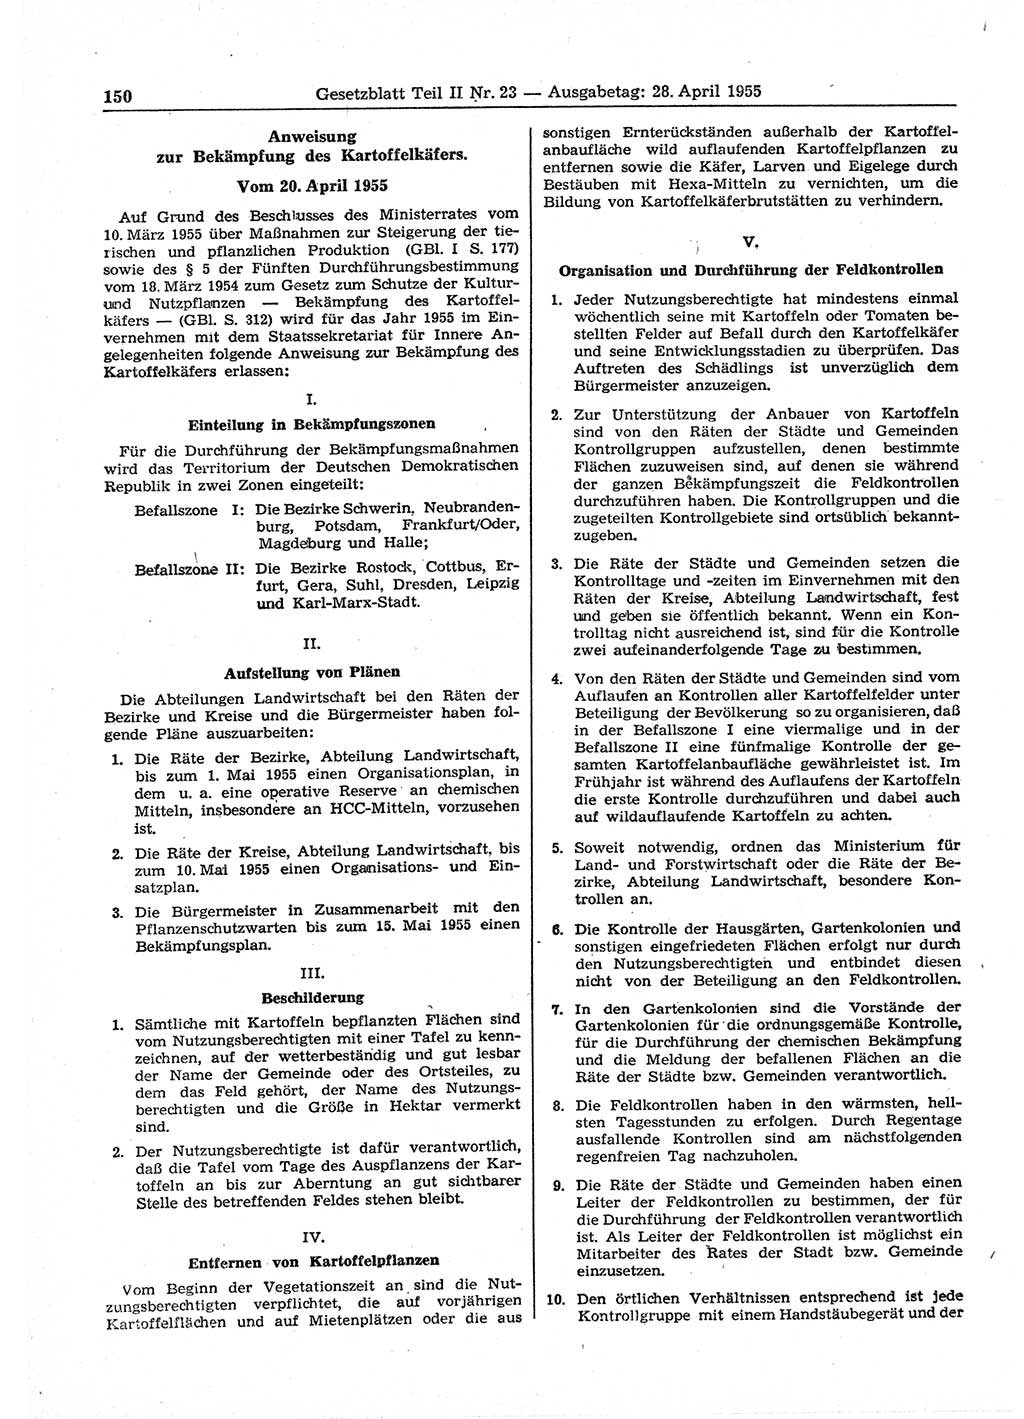 Gesetzblatt (GBl.) der Deutschen Demokratischen Republik (DDR) Teil ⅠⅠ 1955, Seite 150 (GBl. DDR ⅠⅠ 1955, S. 150)